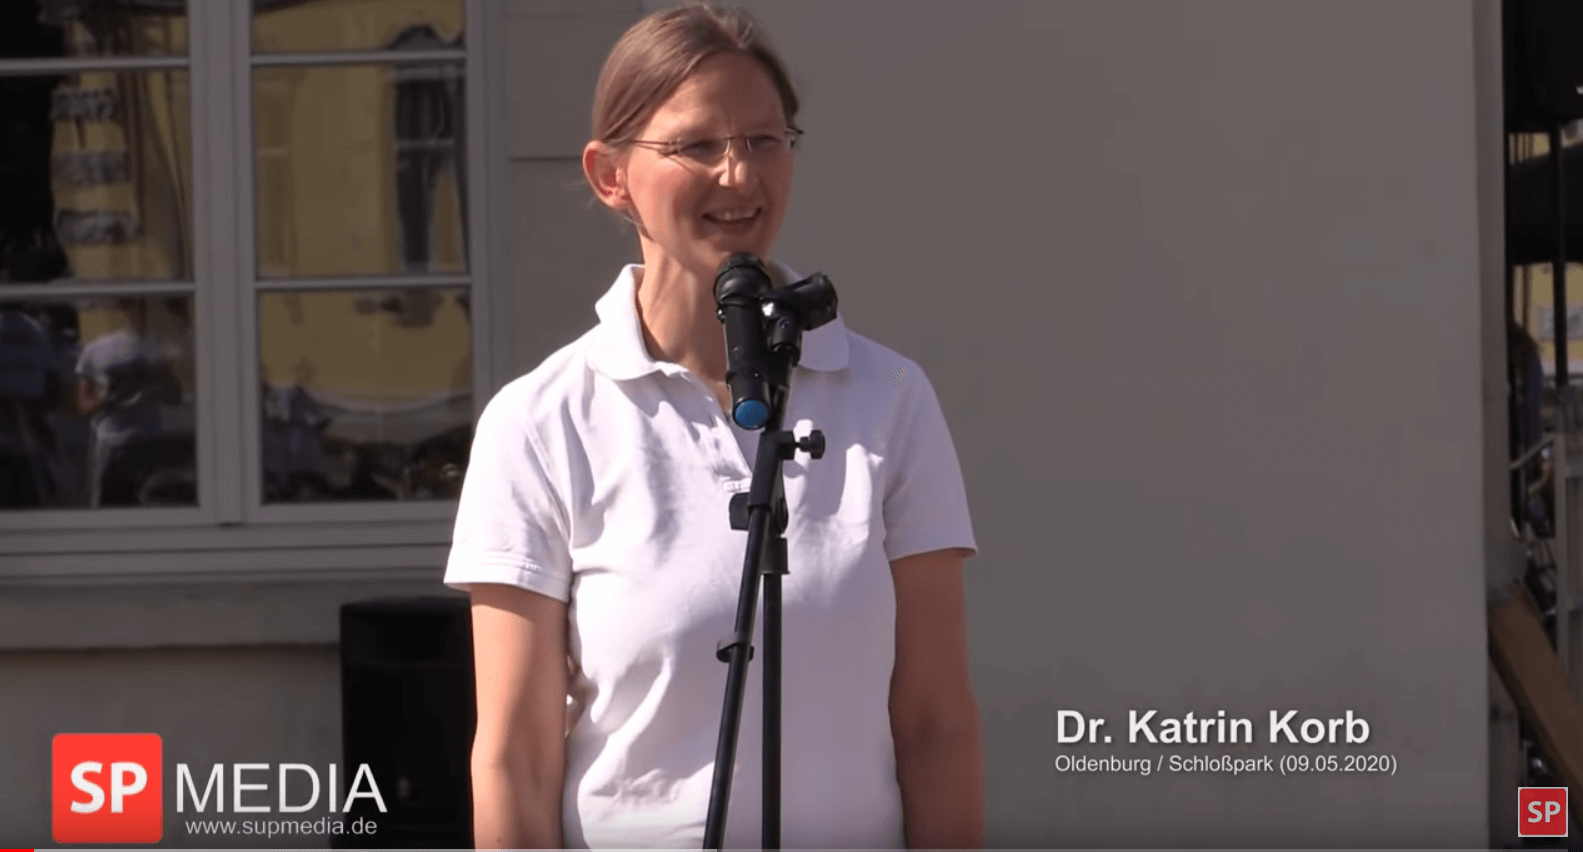 You are currently viewing “Der Weg aus der Krise ist die Bewältigung der Angst!“ – Dr. Katrin Korb